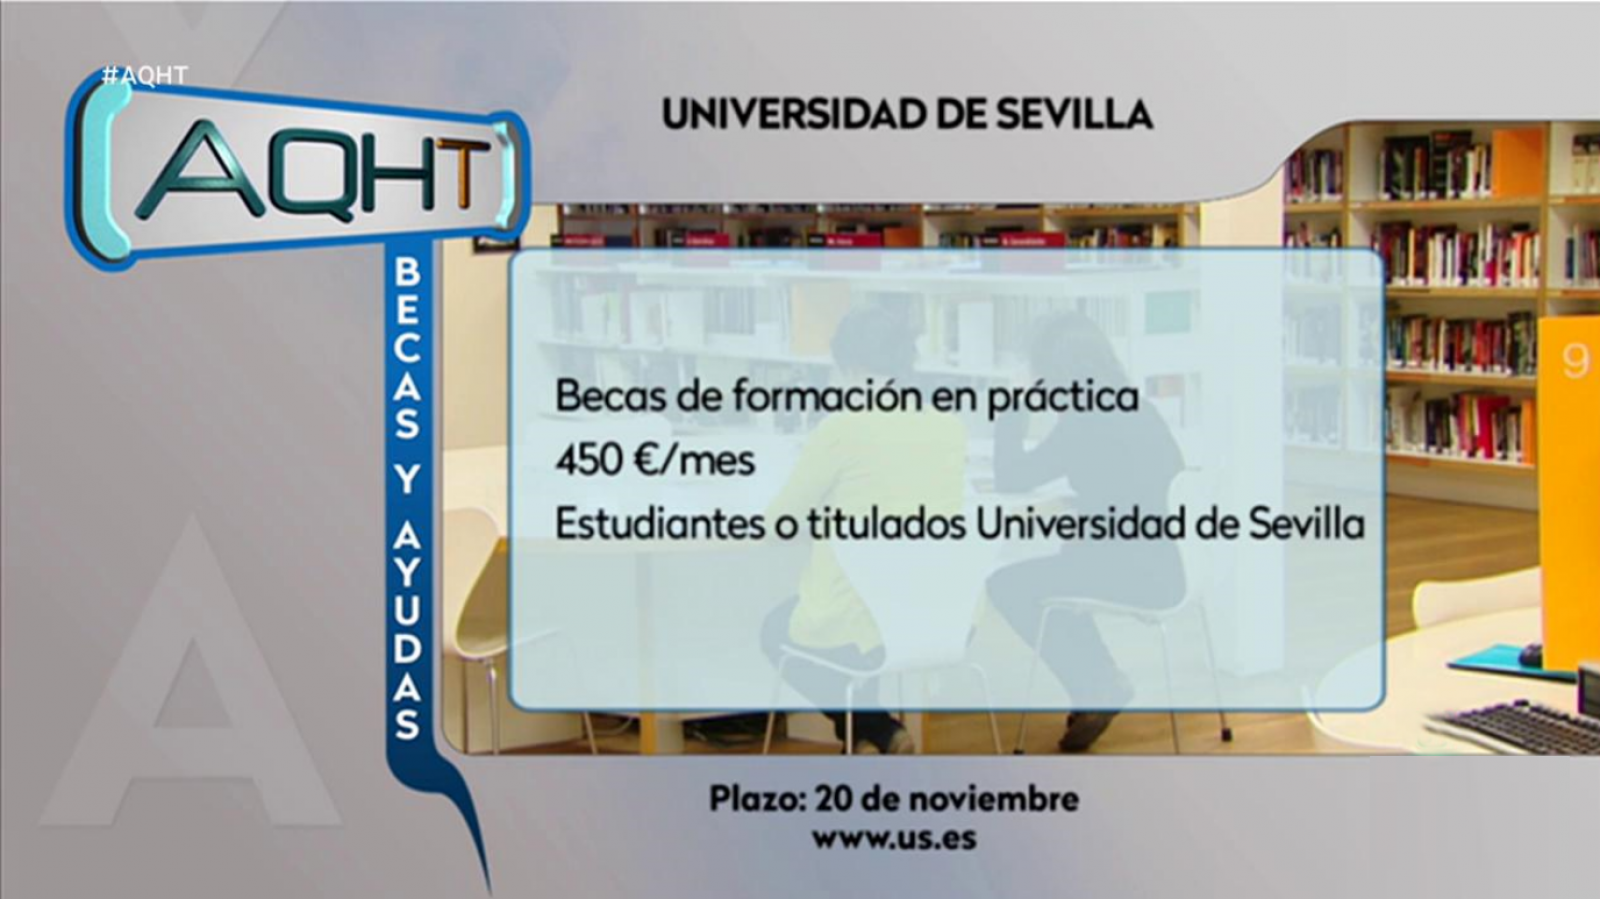 Aquí hay trabajo - 19/11/19 - RTVE.es